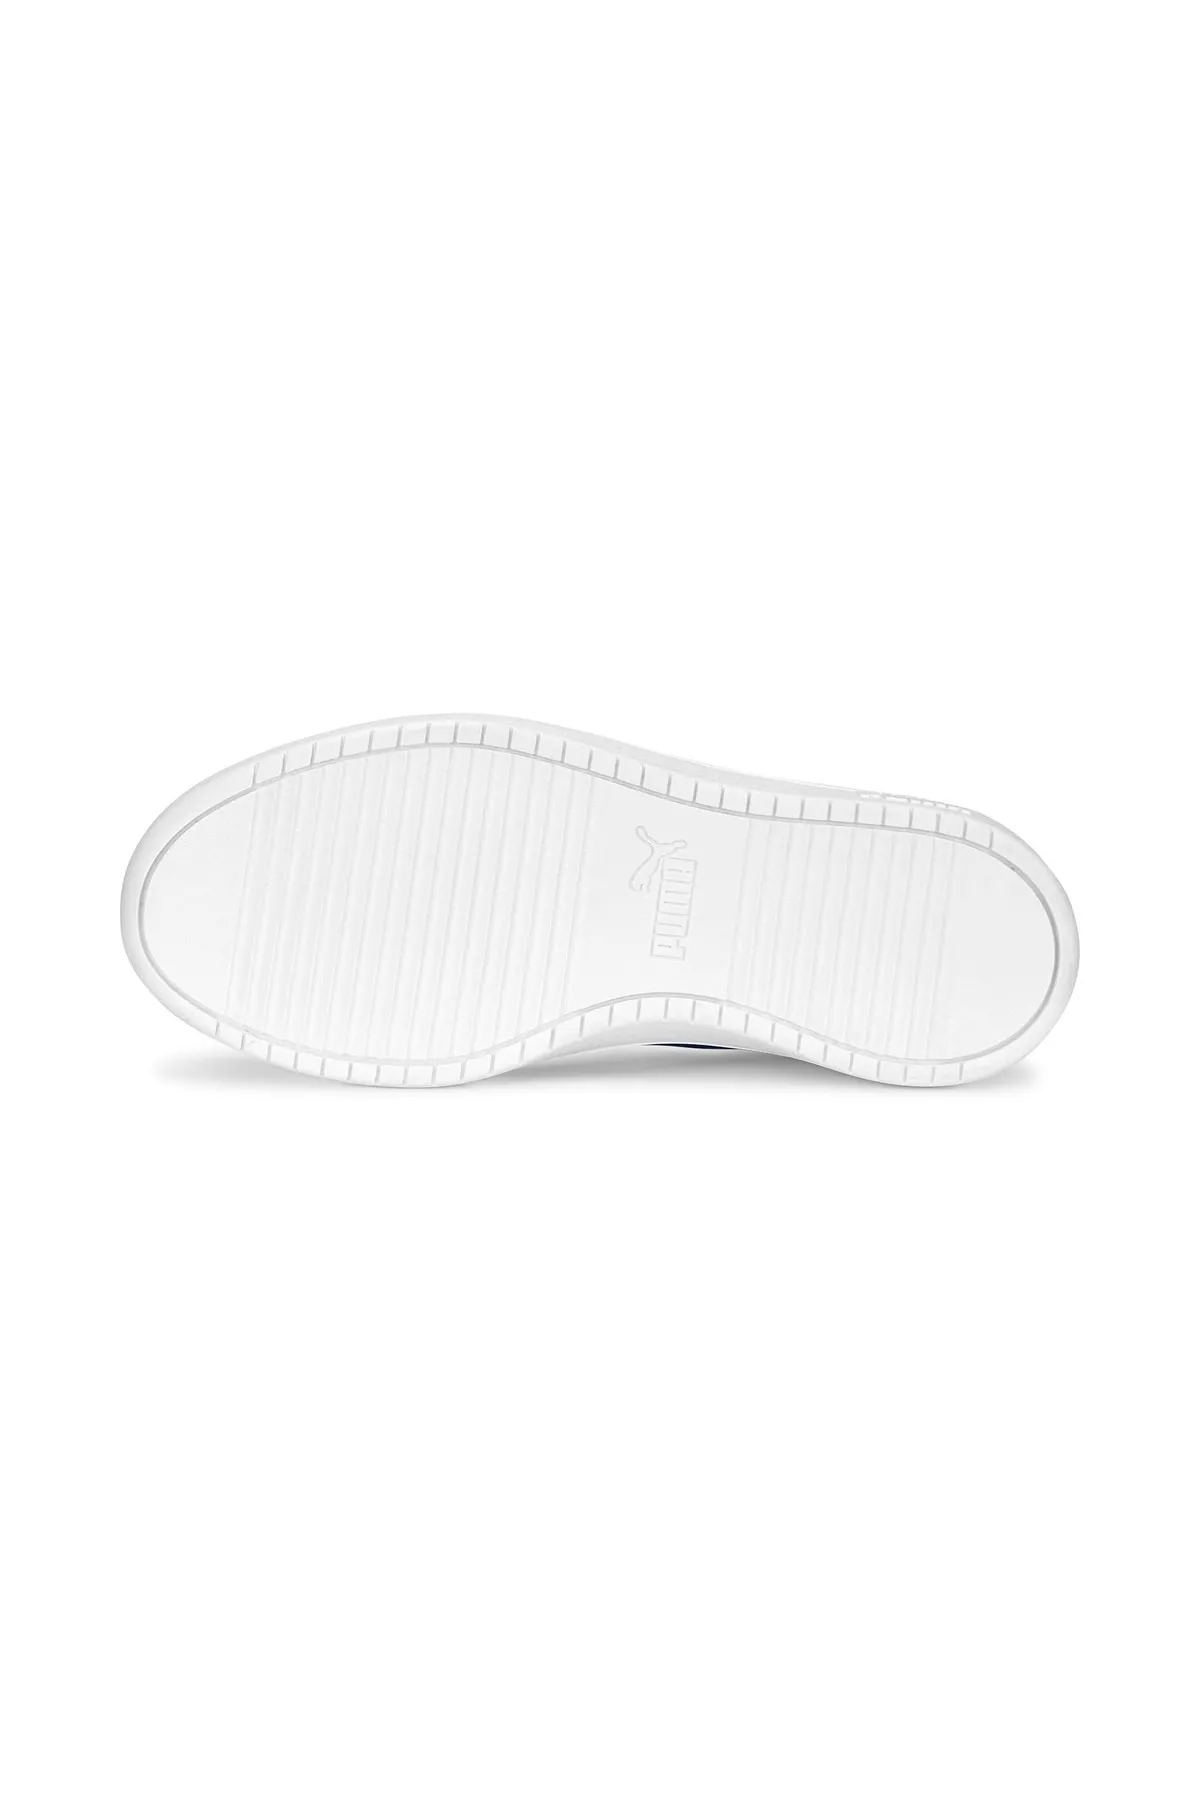 Rickie Jr Kadın Günlük Spor Ayakkabı 384311-Beyaz - Thumbnail